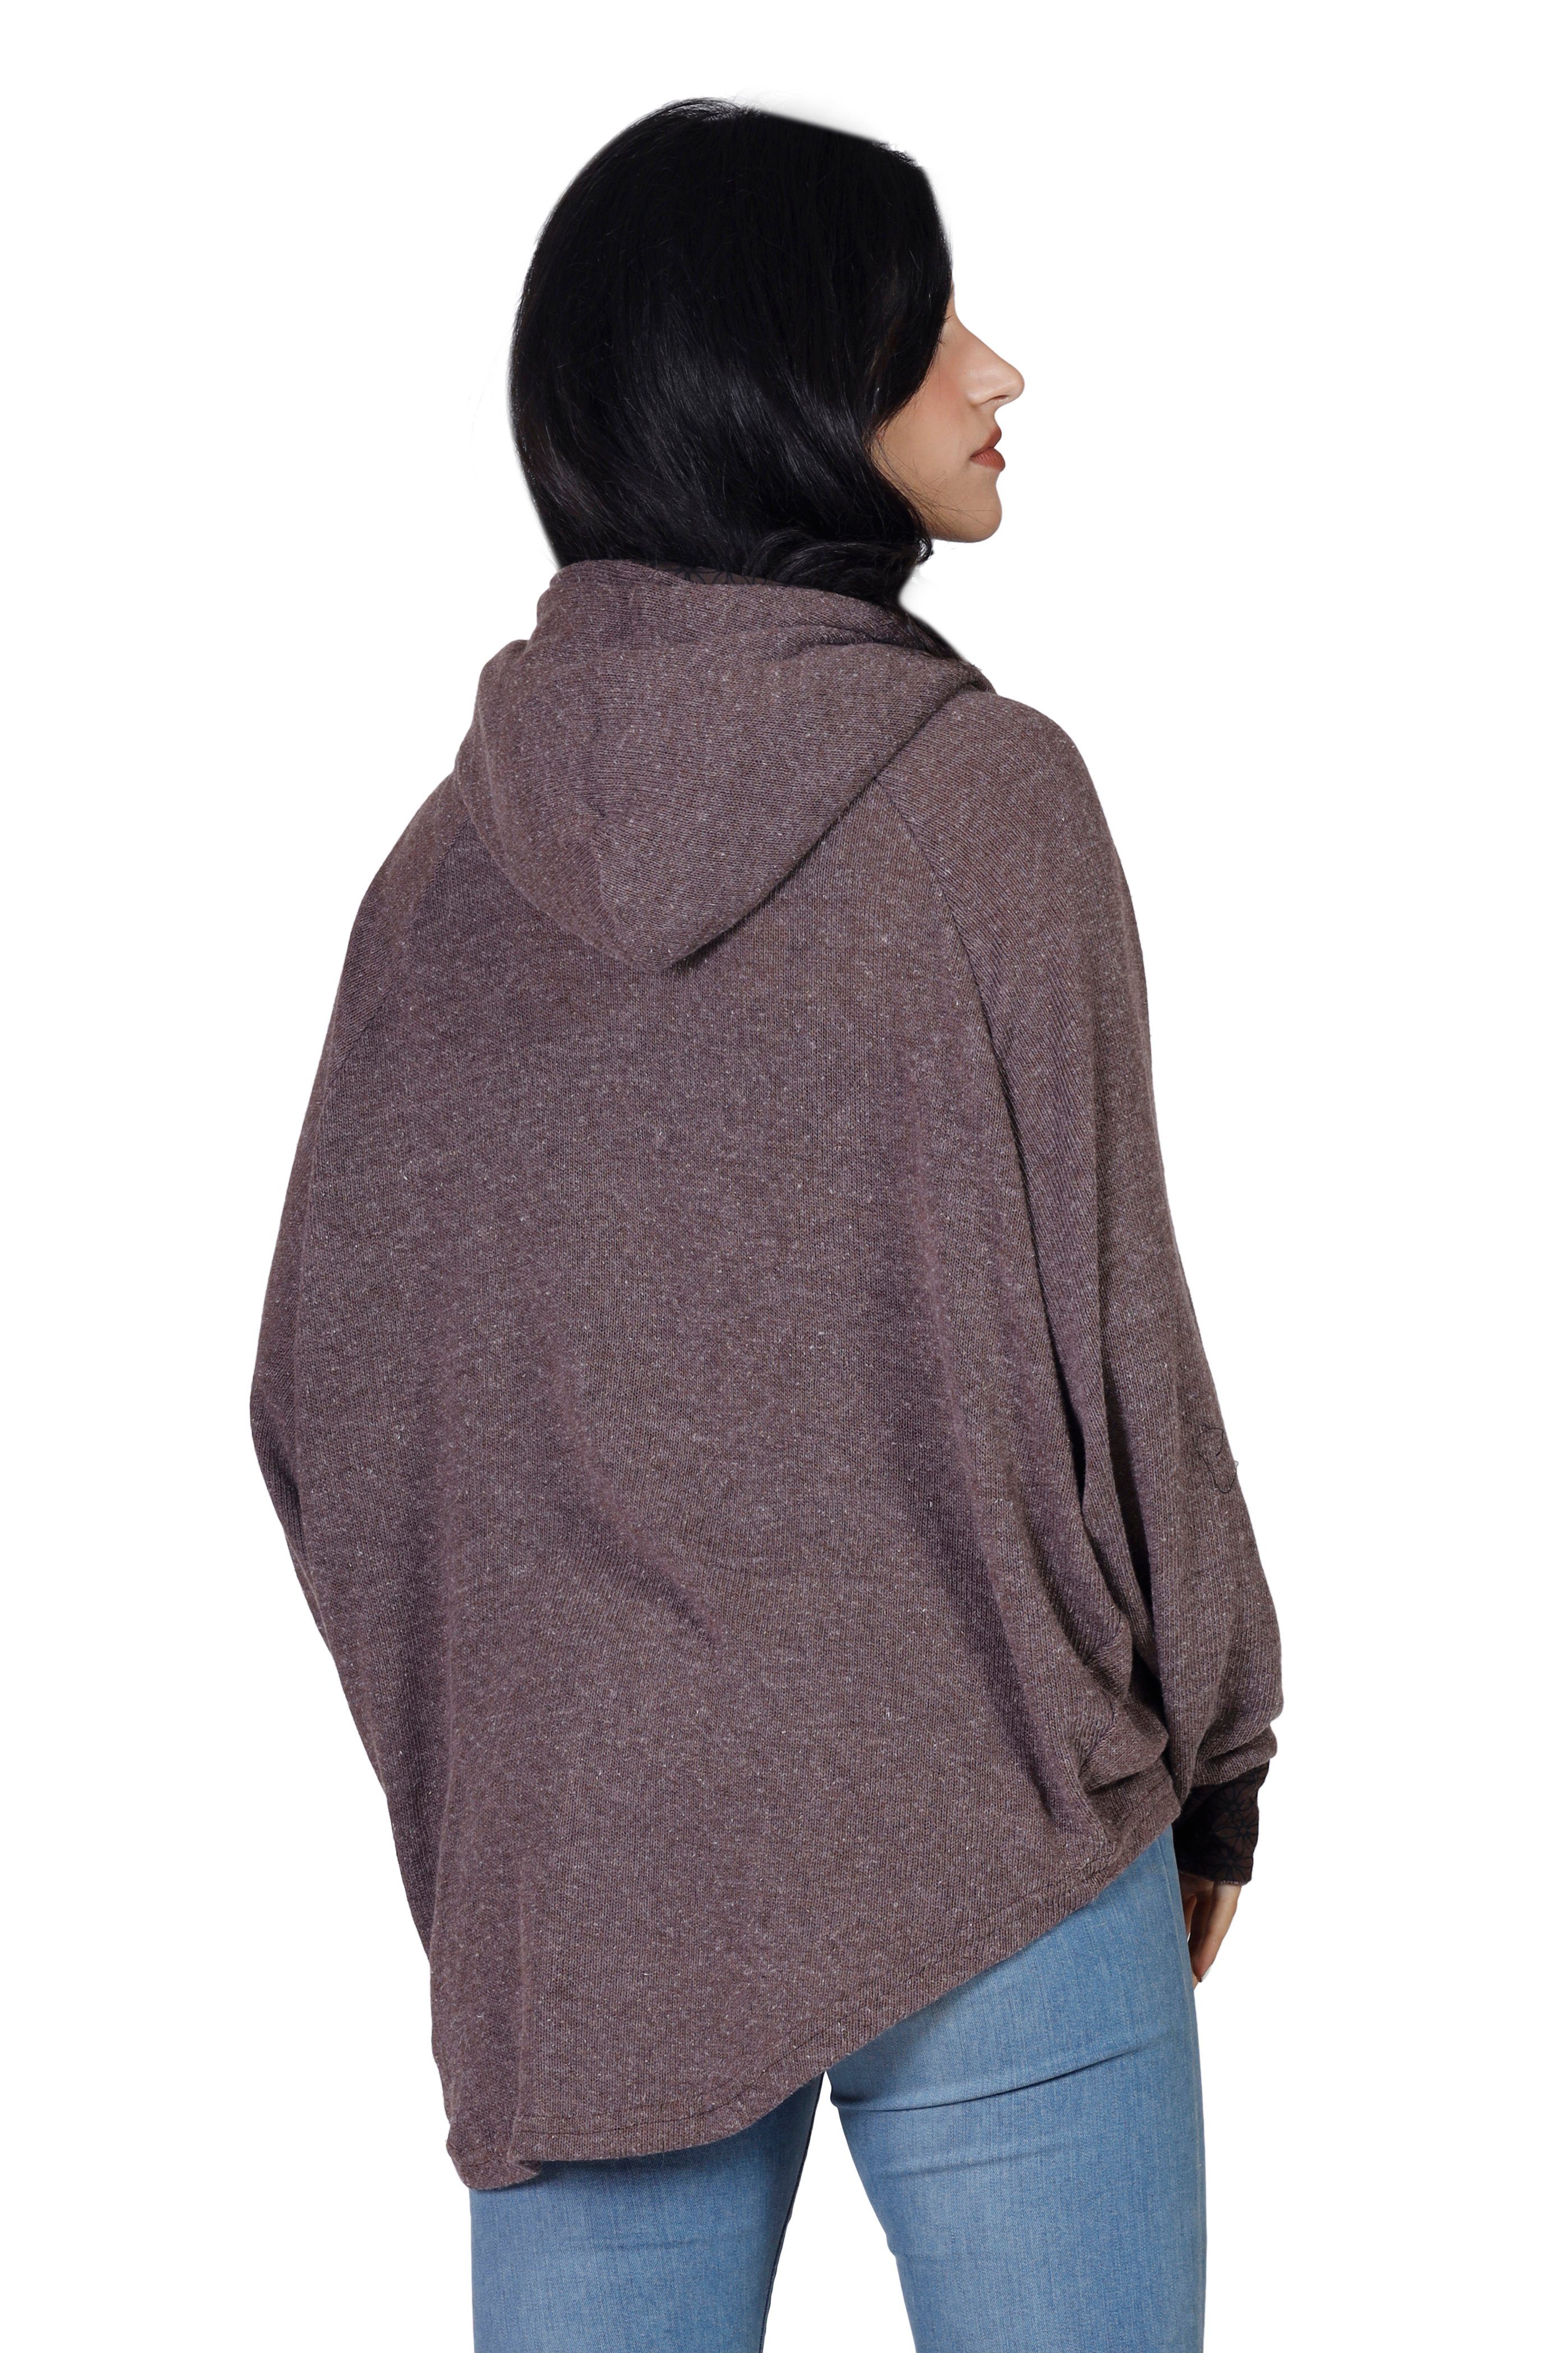 Pullover, alternative Guru-Shop Hoody, -.. Longsleeve Bekleidung Sweatshirt, braun Kapuzenpullover